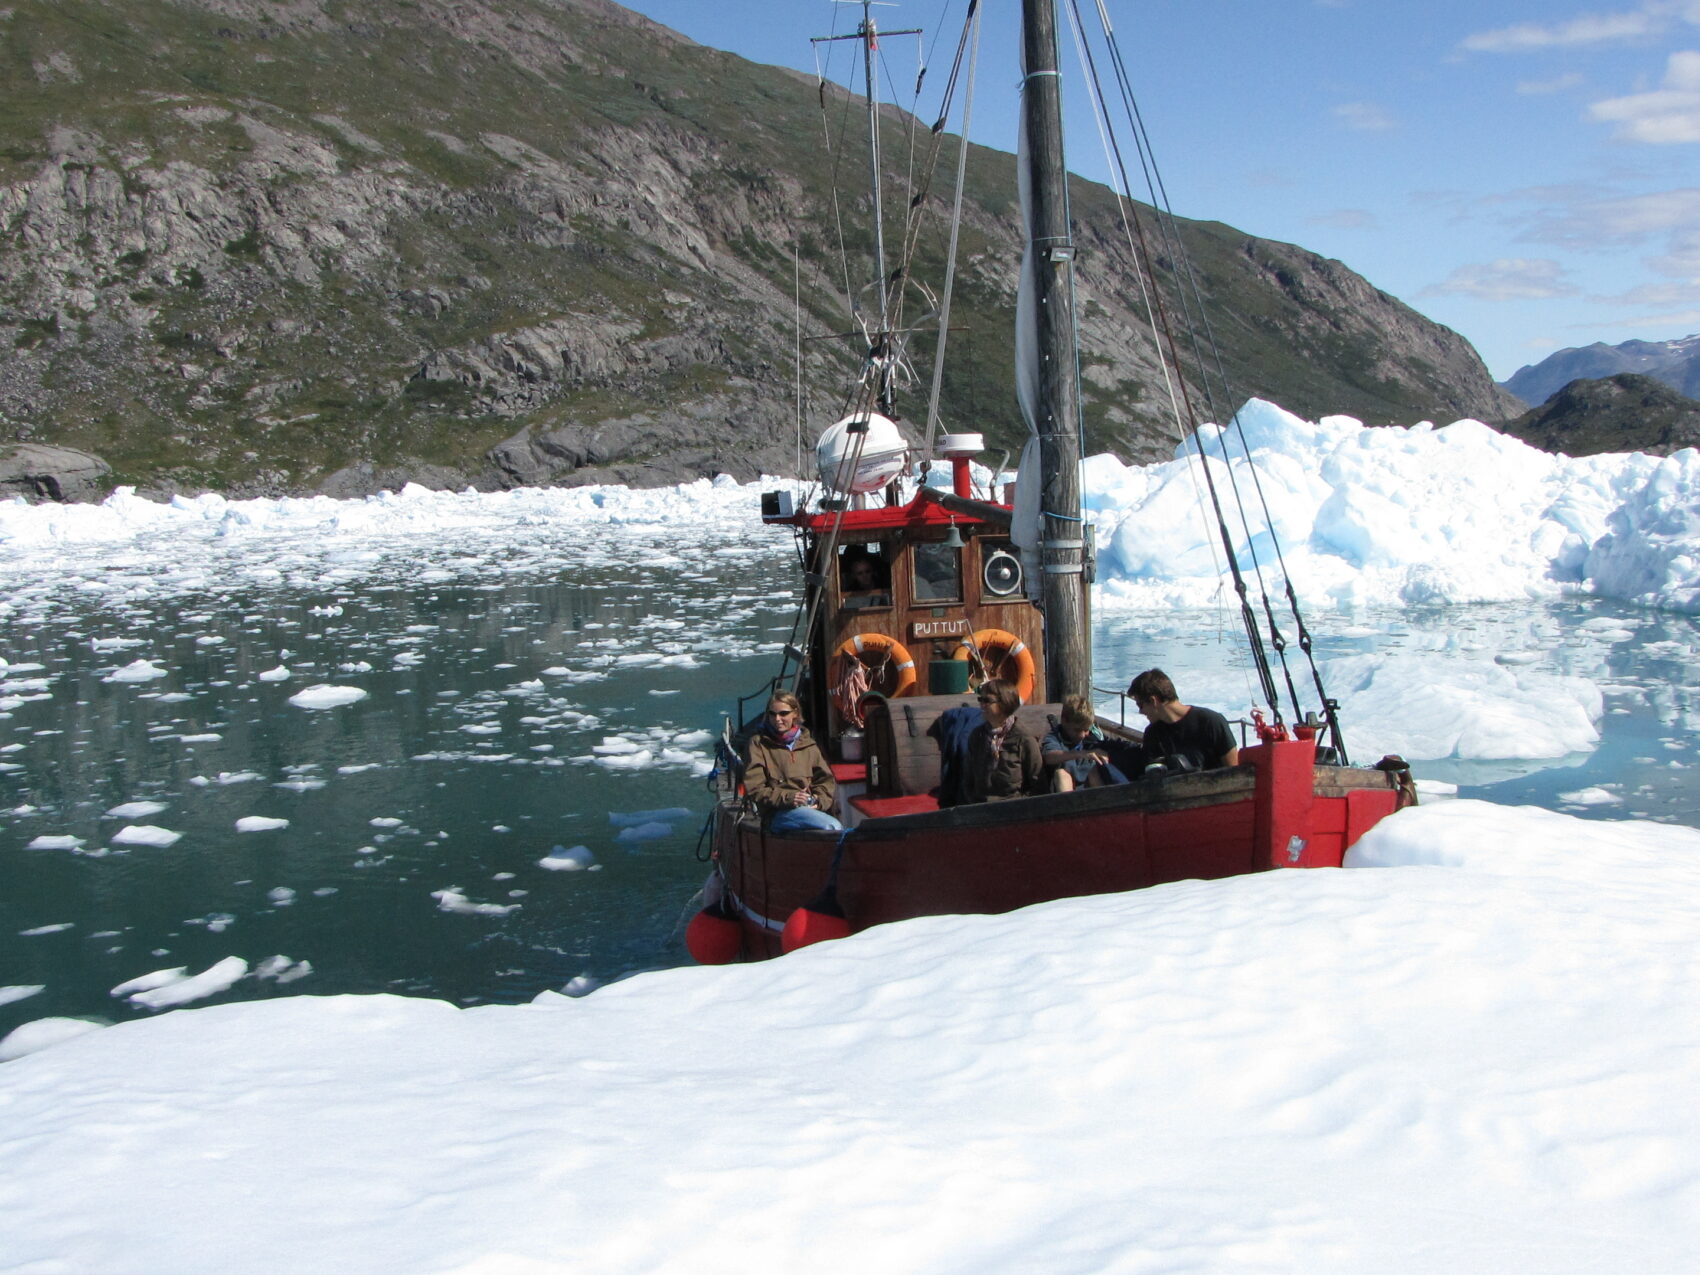 Südgrönland: Qorooq Eisfjord
Bootstour im Eisfjord